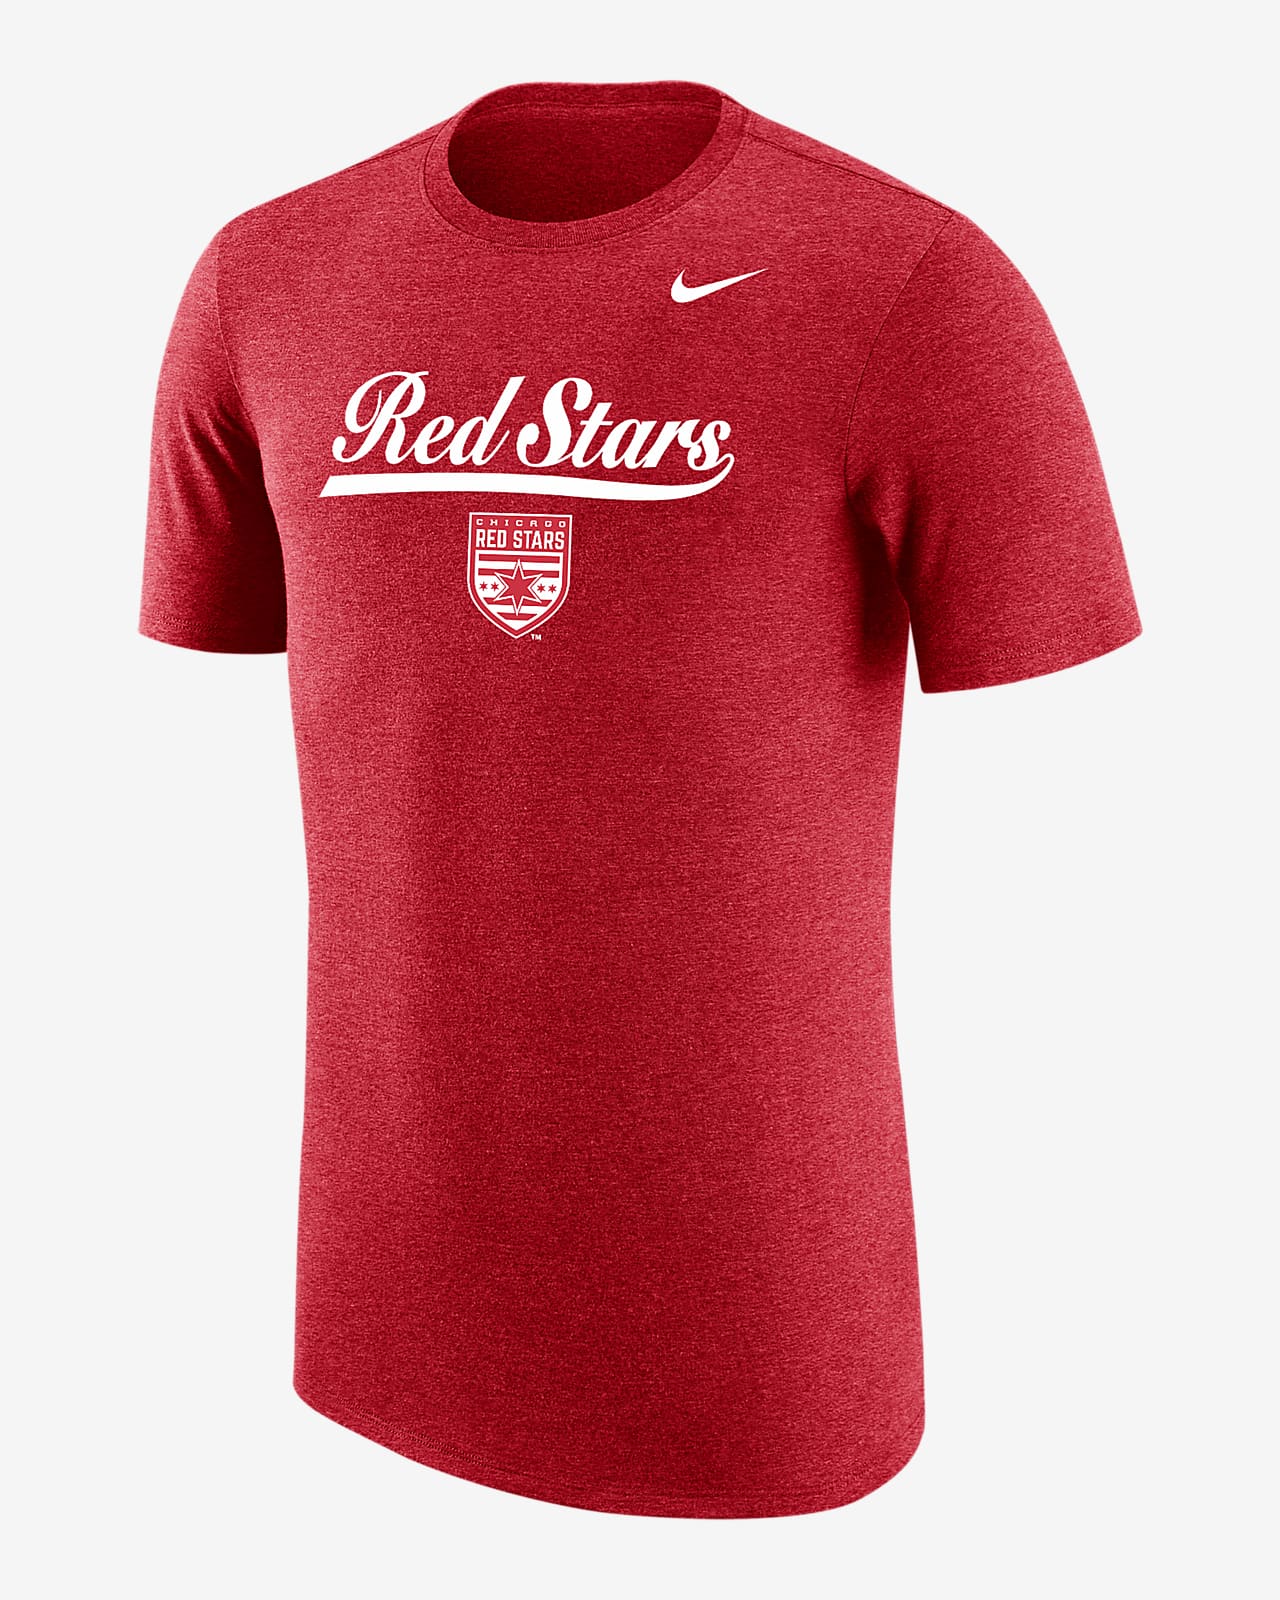 Chicago Red Stars Men's Nike Soccer T-Shirt